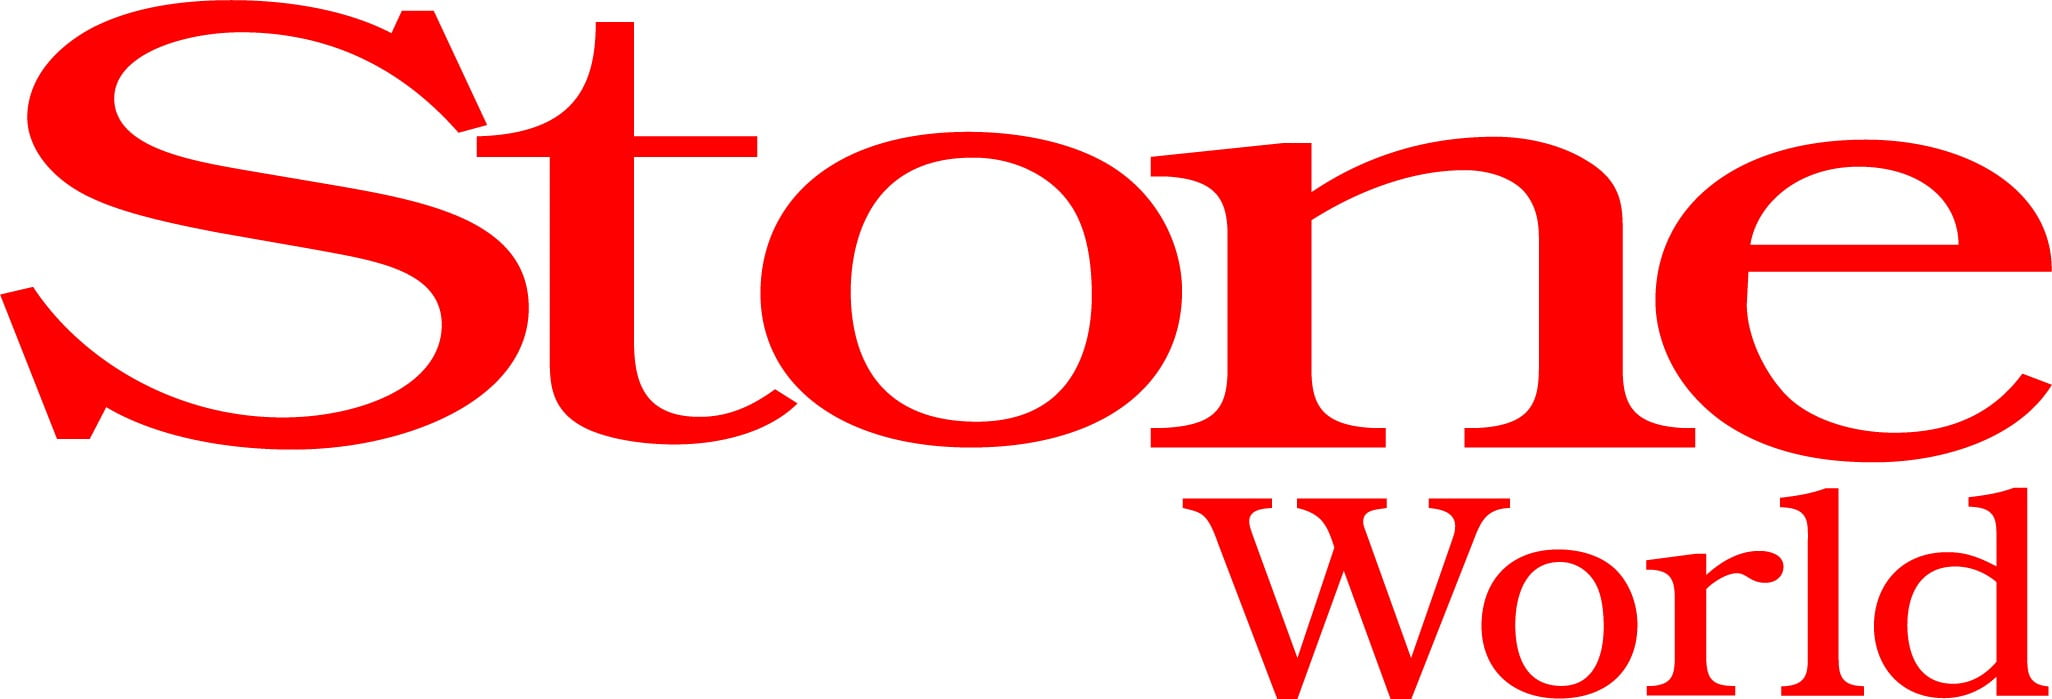 Stone World logo